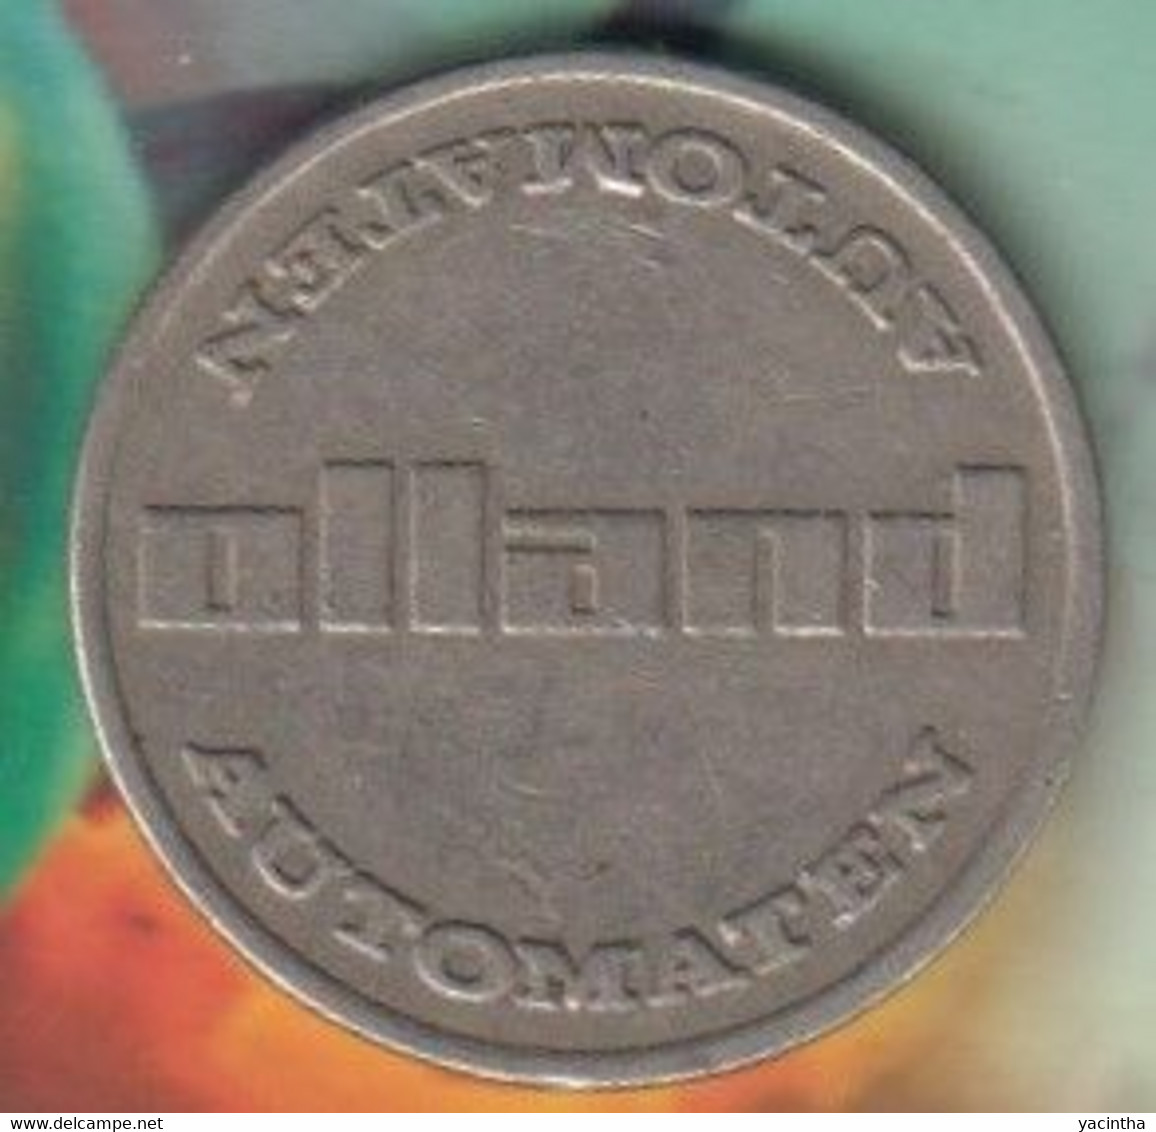 Olland Automaten      (1019) - Monedas Elongadas (elongated Coins)